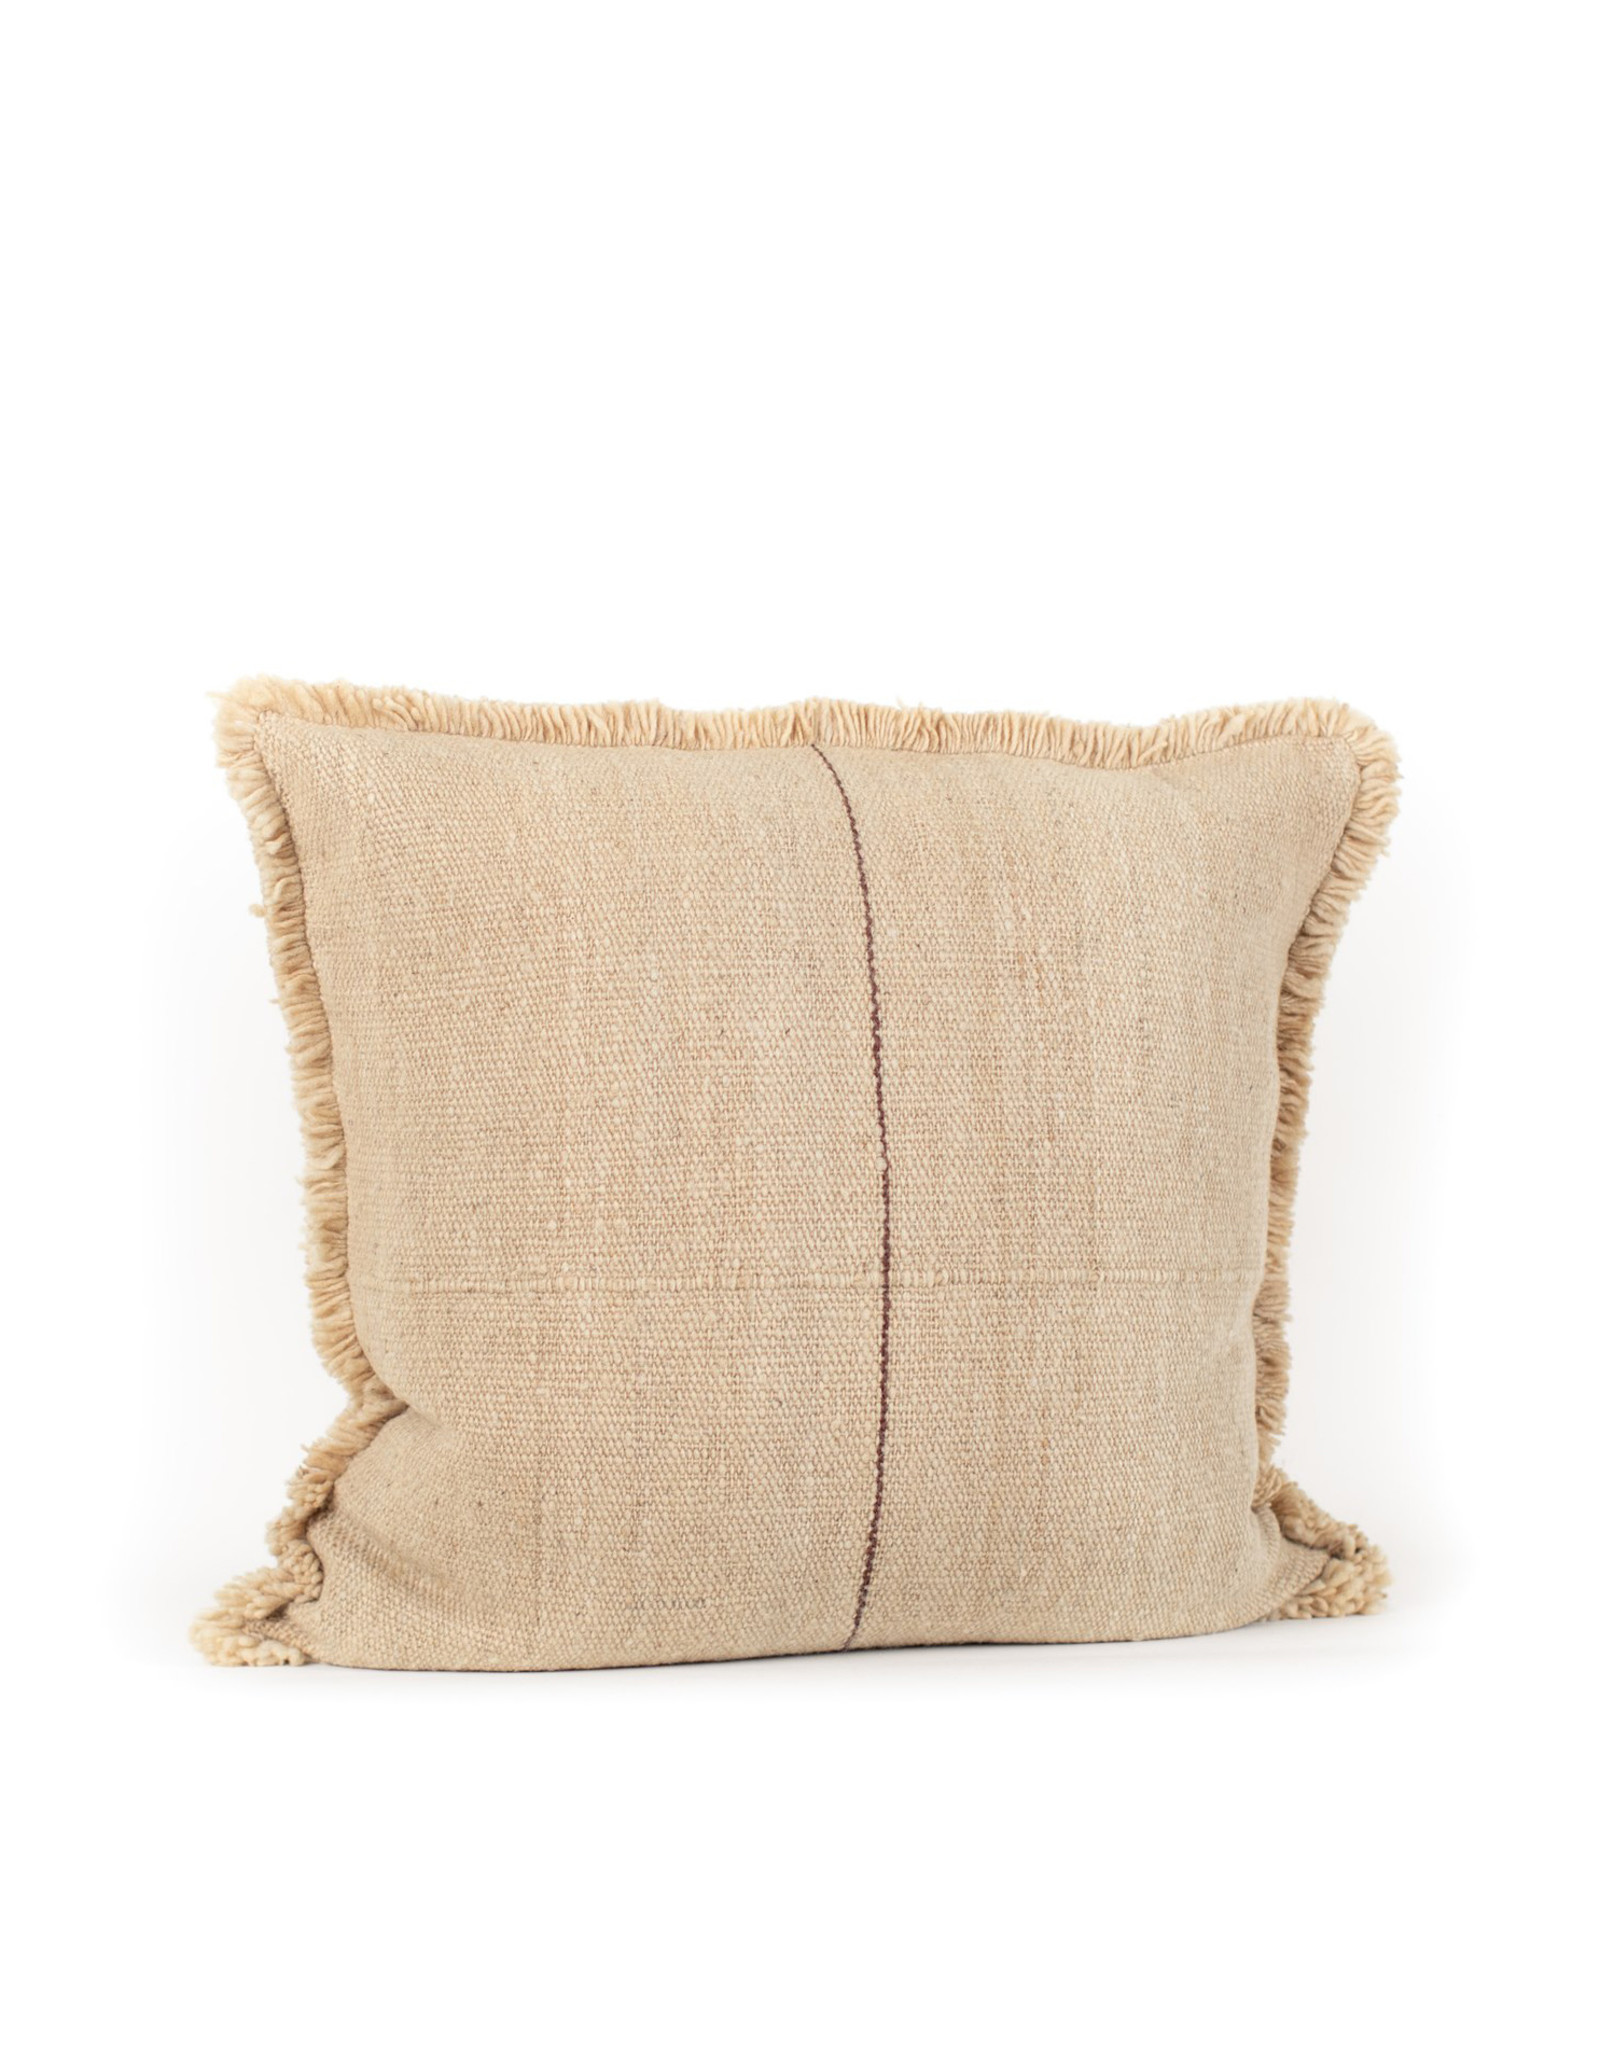 Hand Woven Oatmeal/Plum Chilean Pillow, 26x26